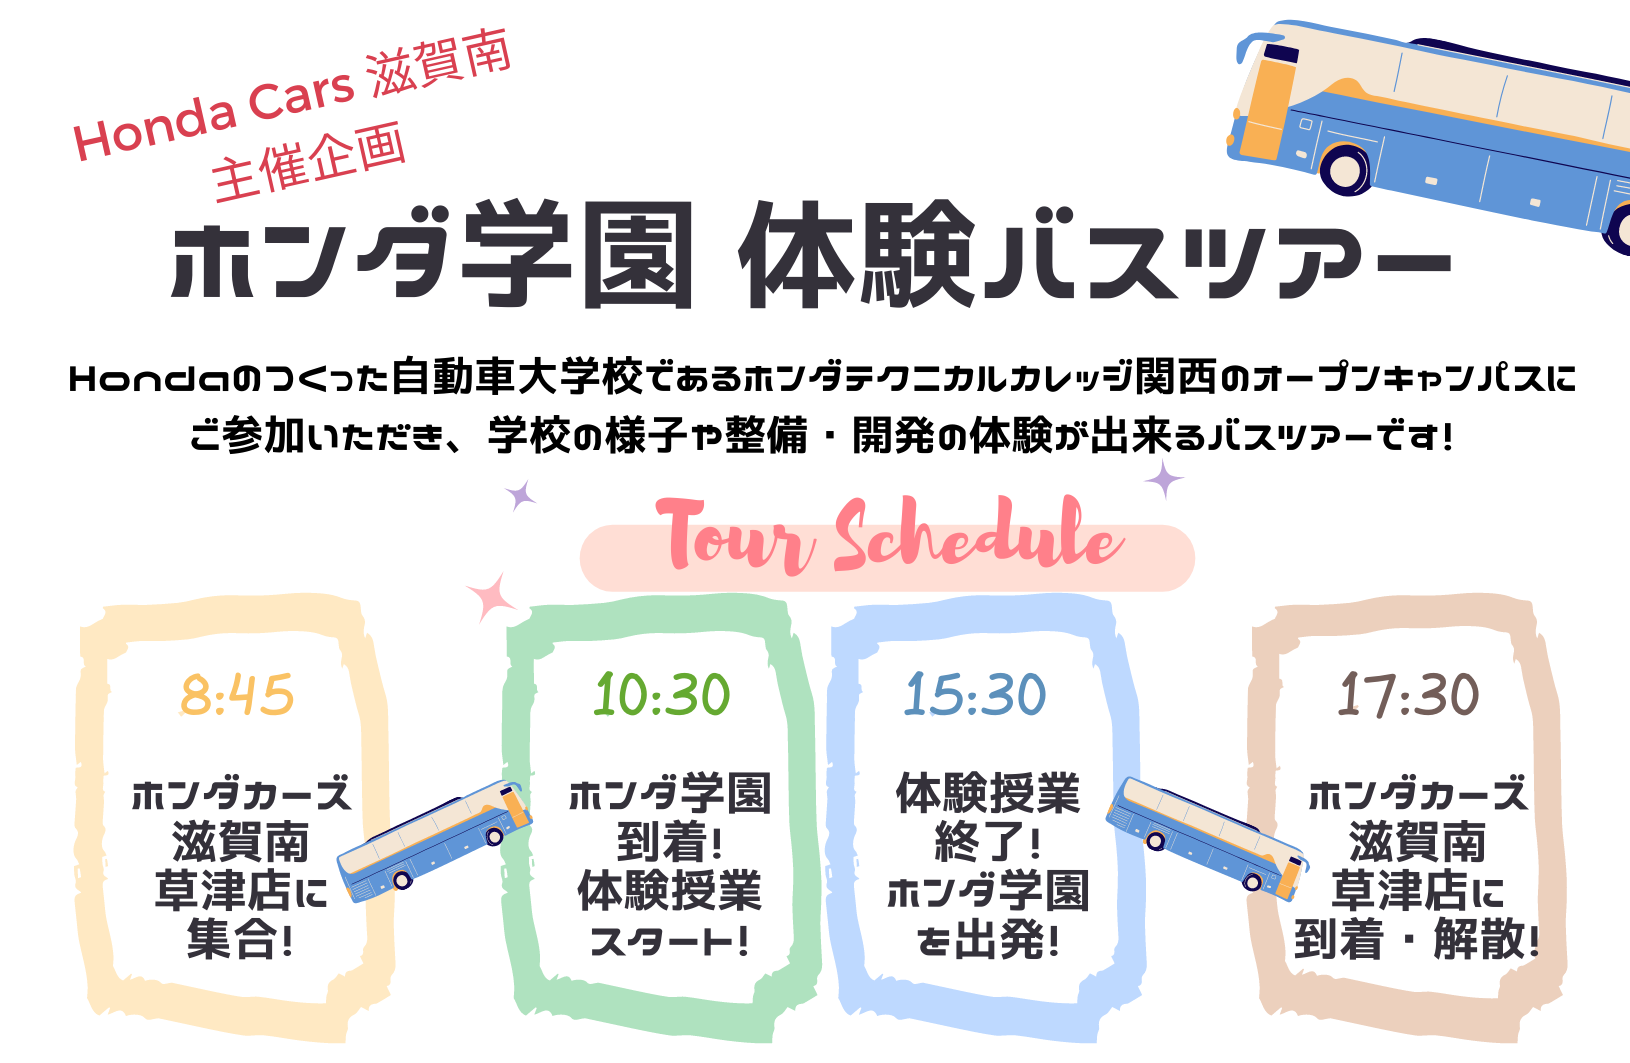 Honda Cars滋賀南主催 ホンダ学園体験バスツアー(7/30)